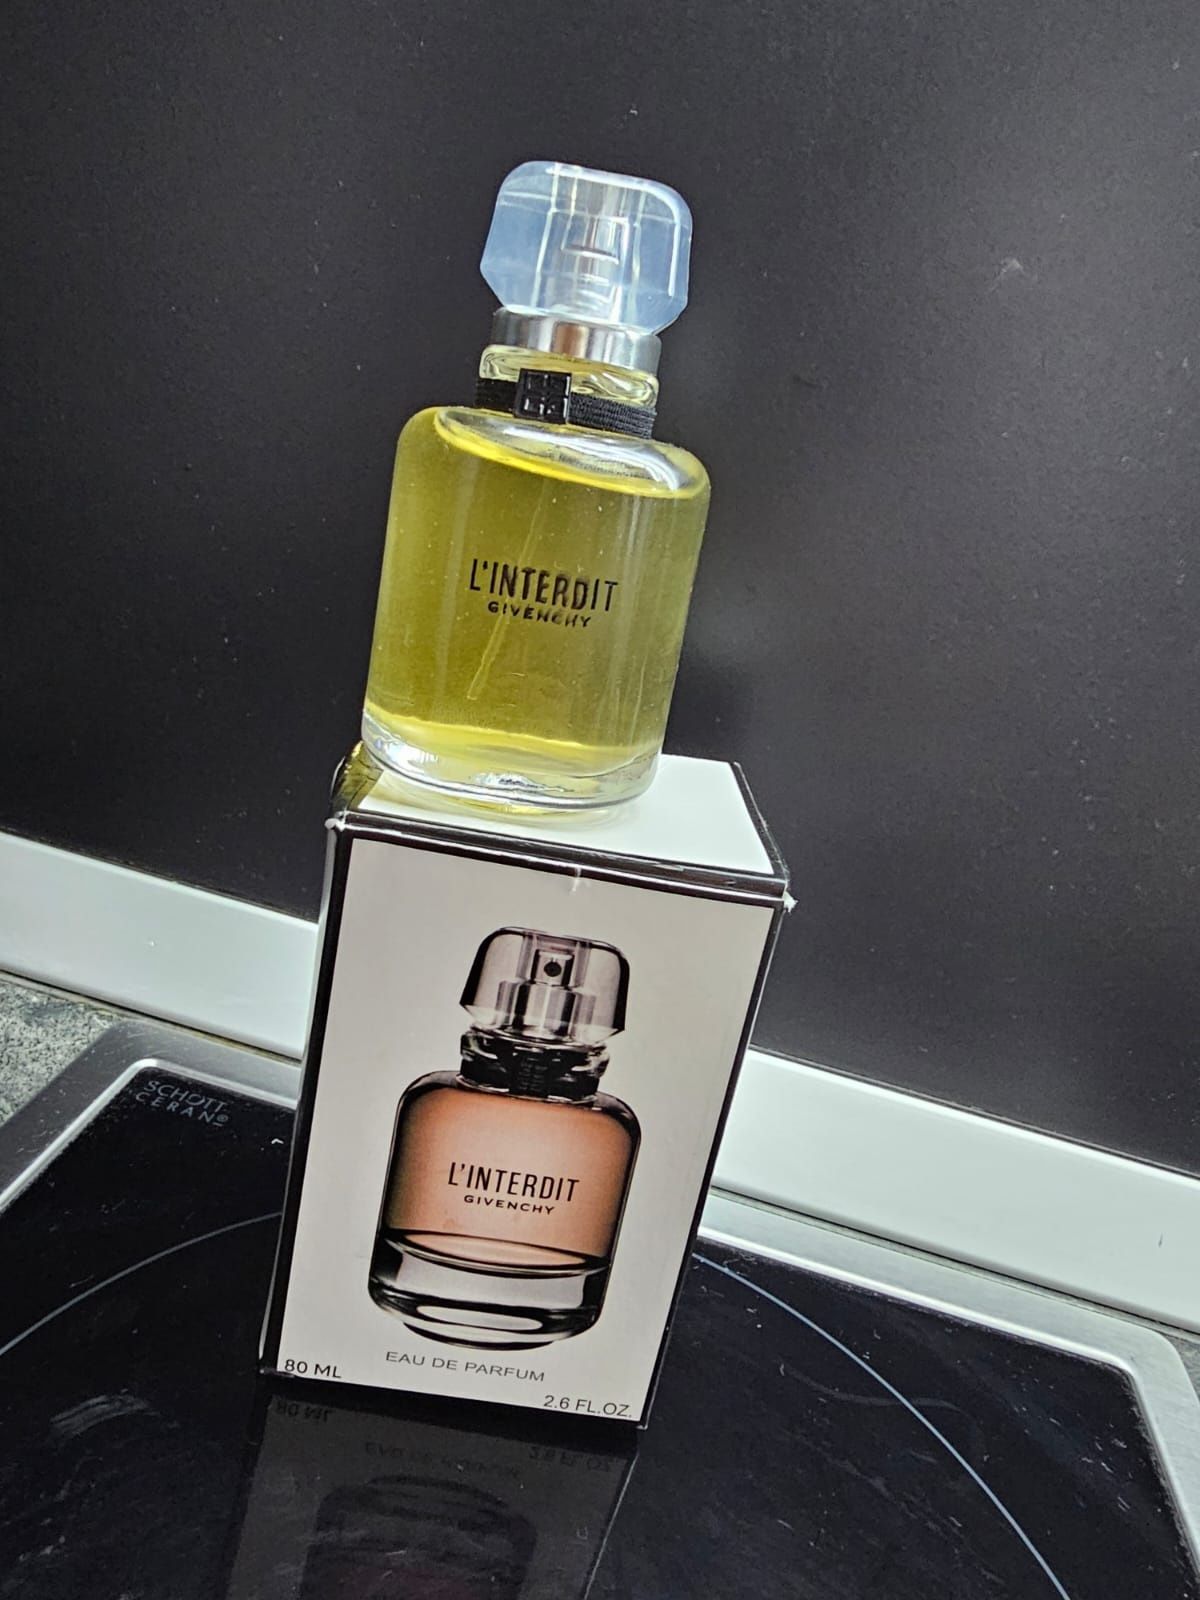 Vand parfum Givenchy L'interdit 80 ml